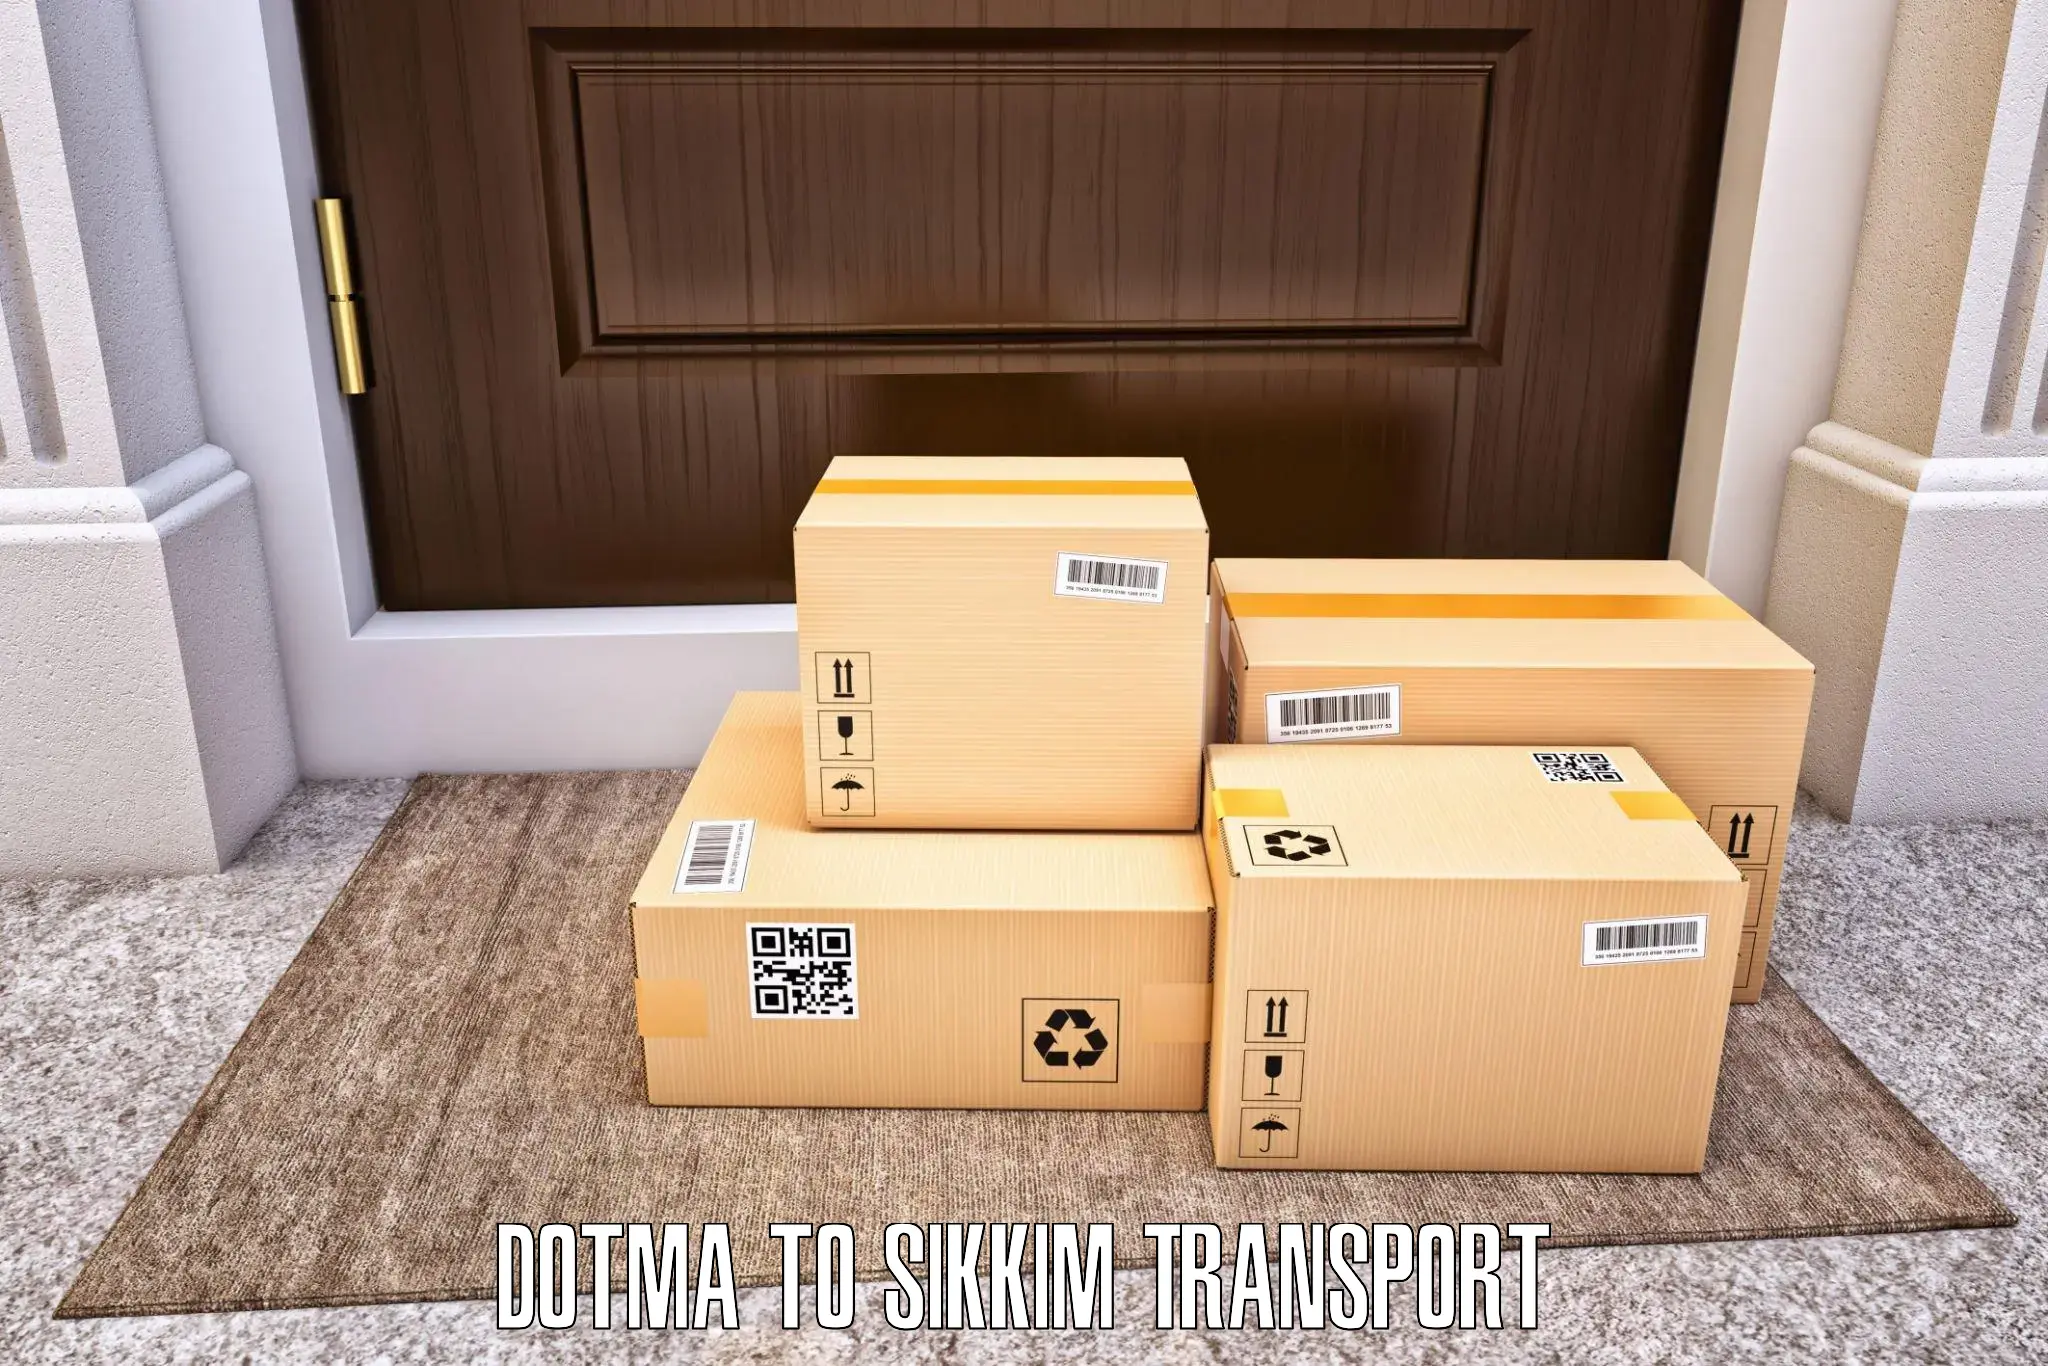 Pick up transport service Dotma to Sikkim